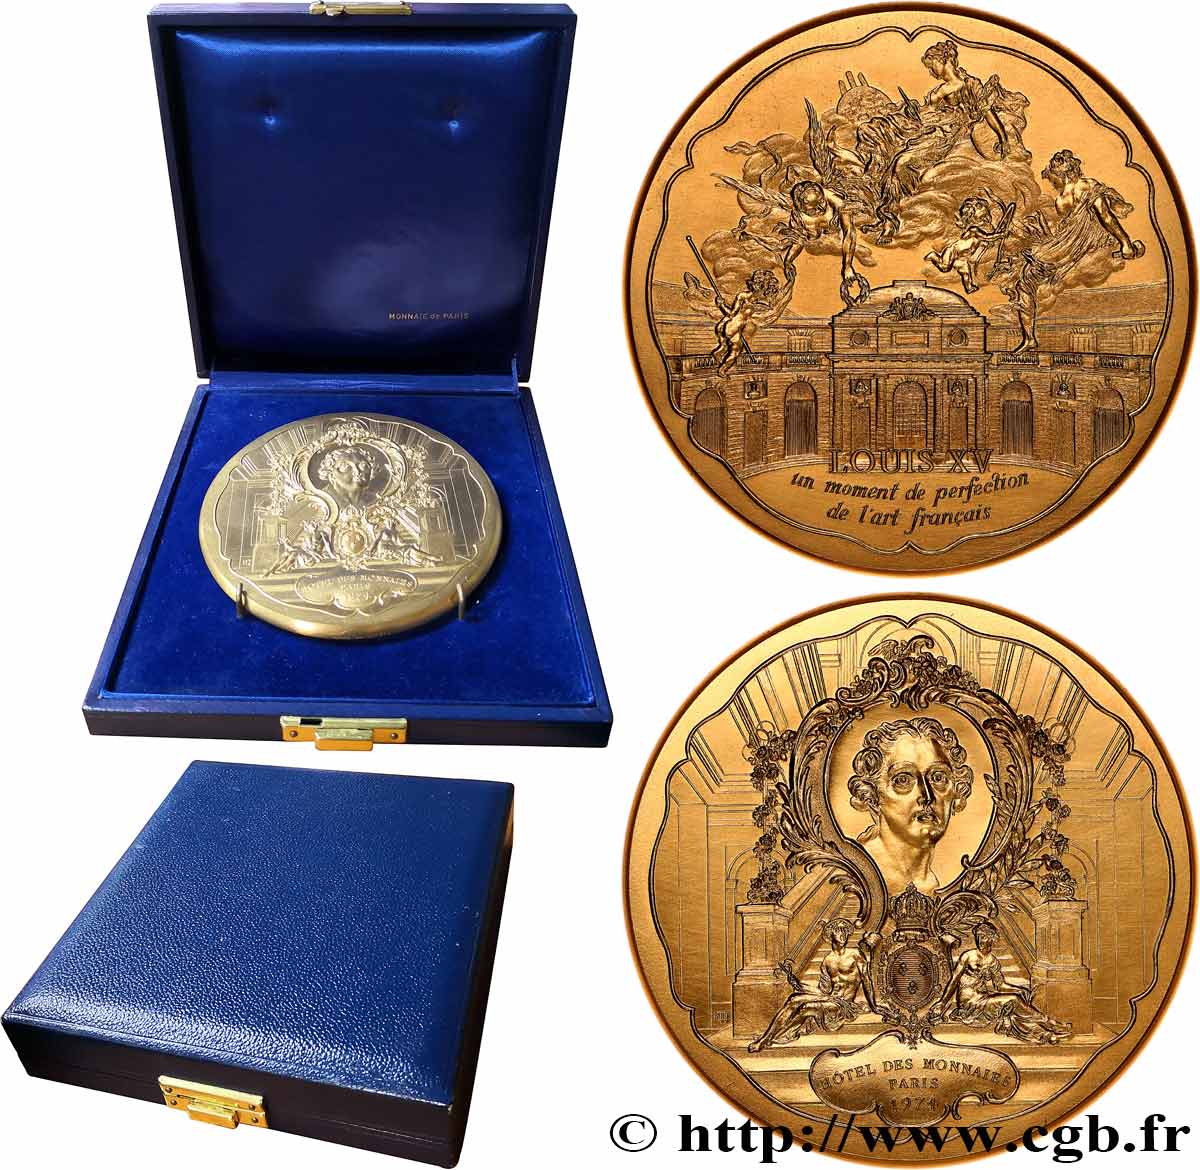 QUINTA REPUBBLICA FRANCESE Médaille, Louis XV, un moment de perfection de l’art français, Exemplaire Editeur MS